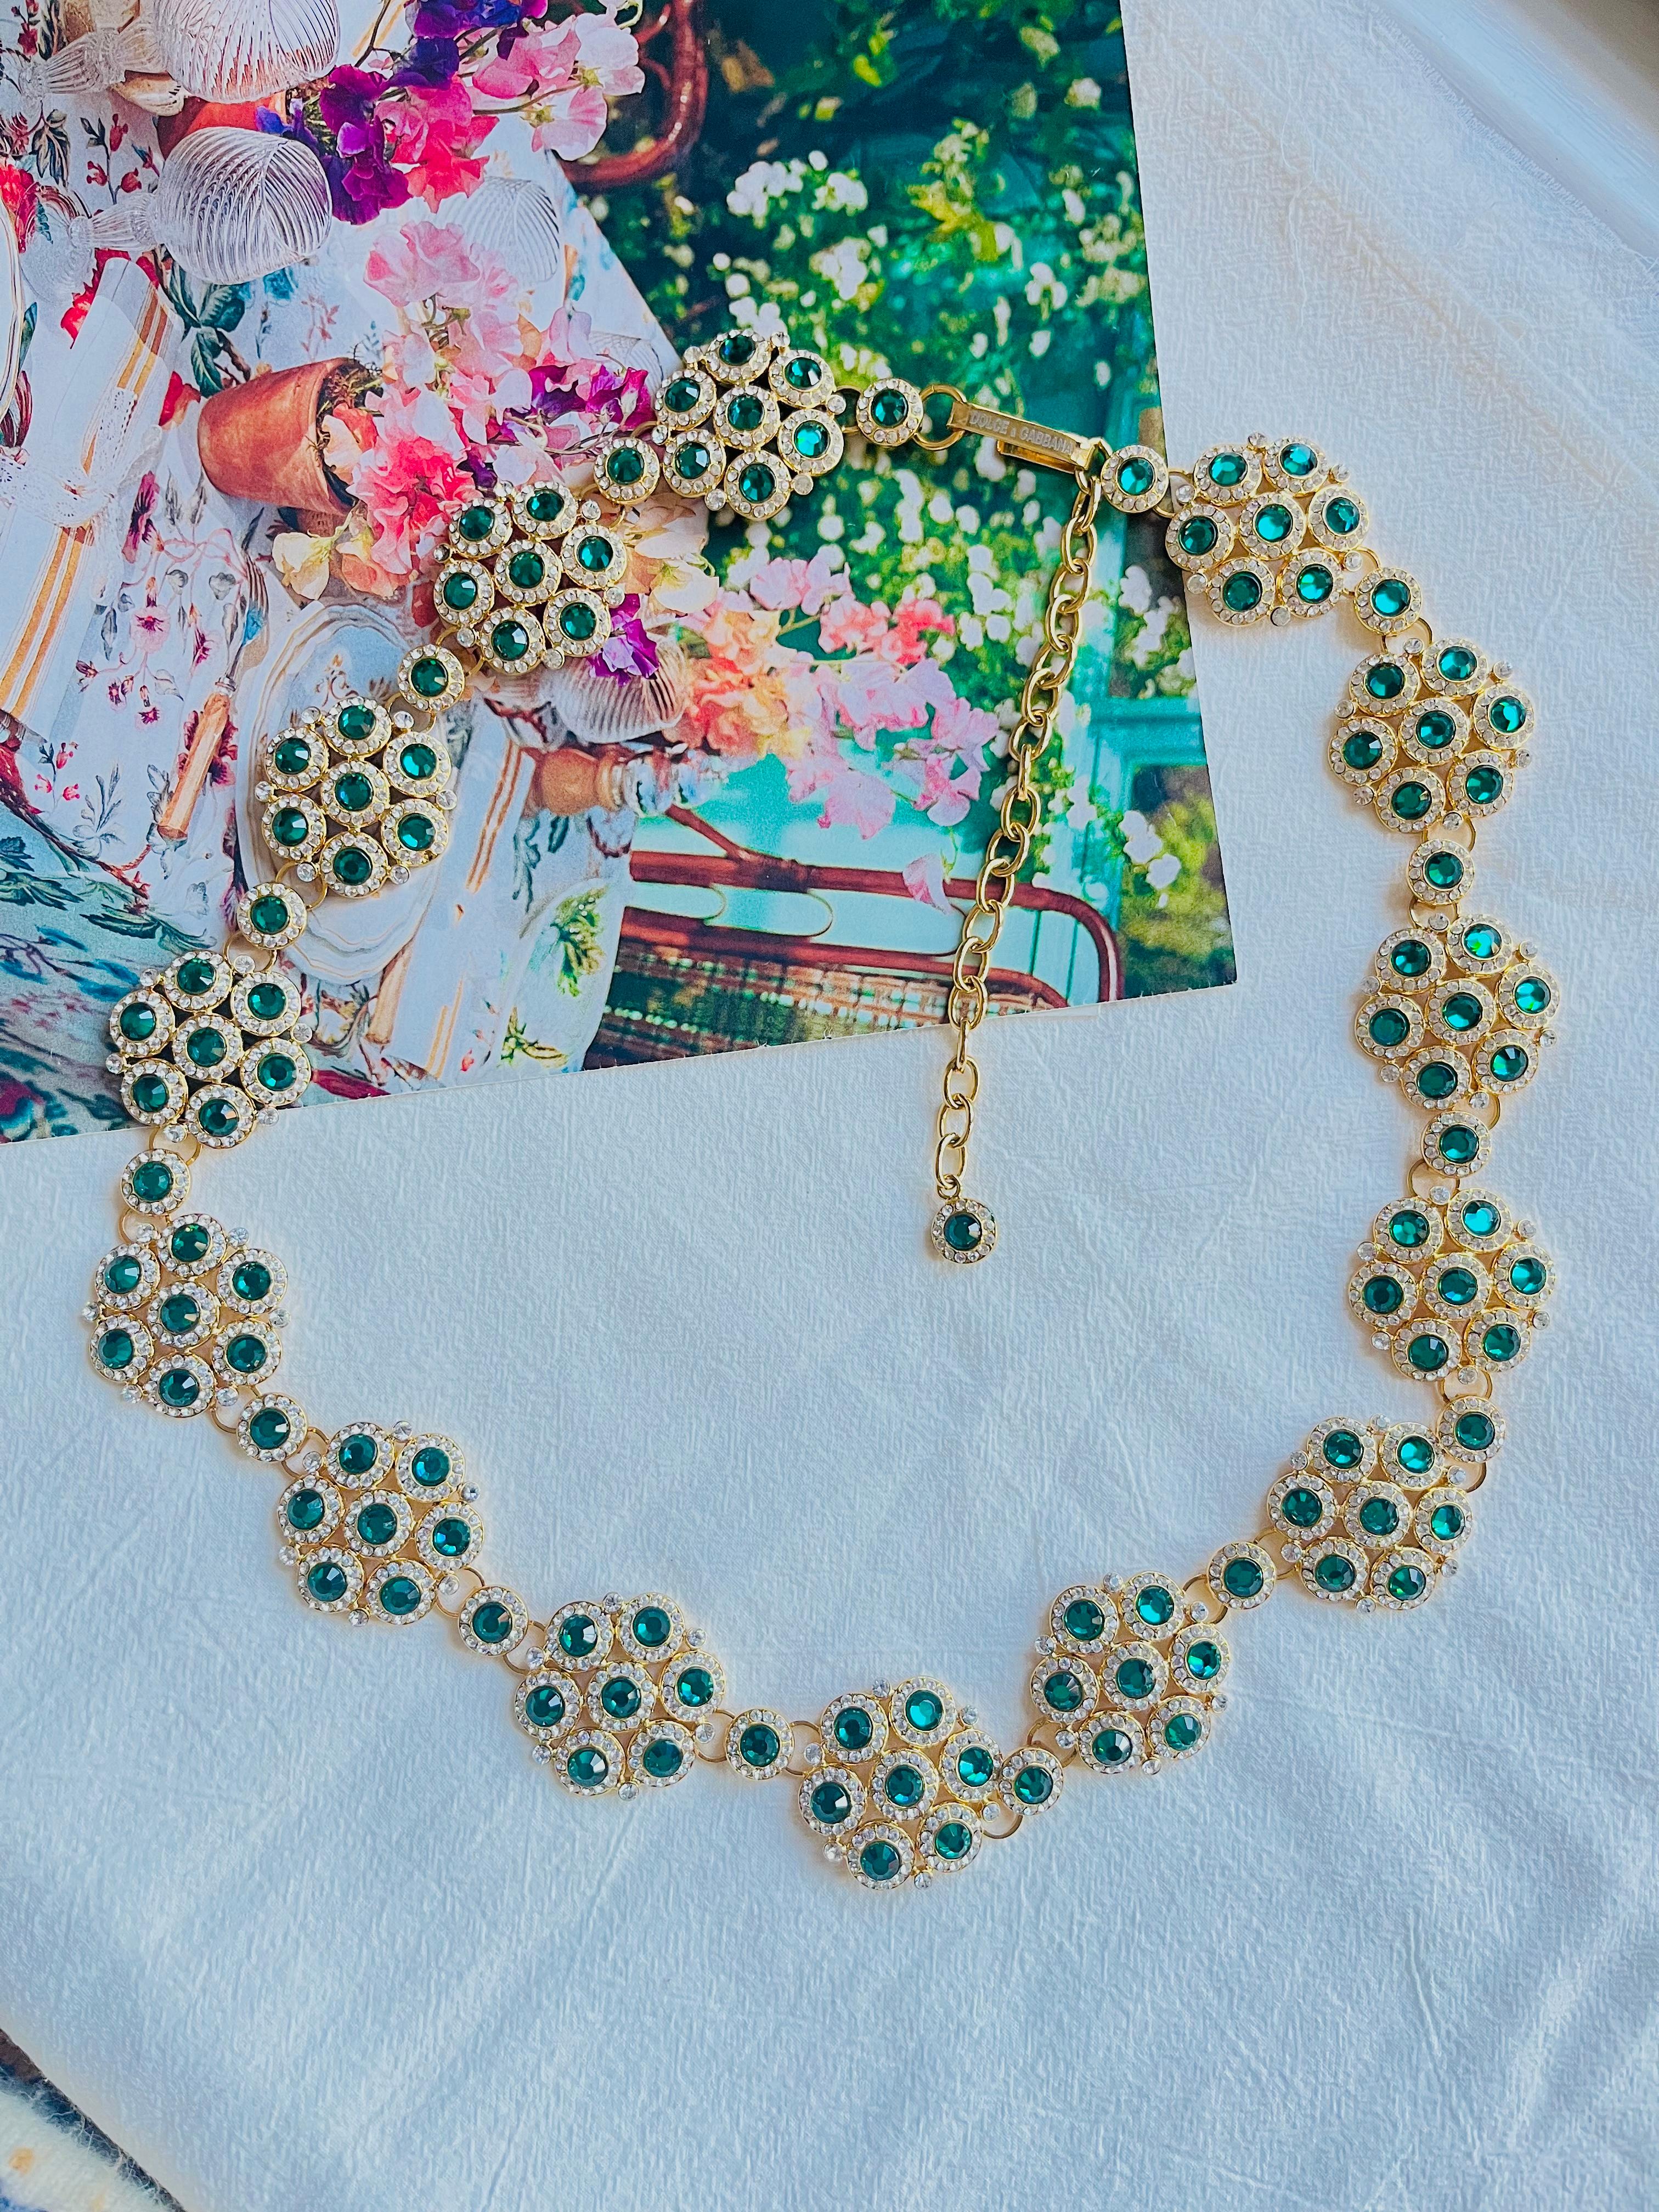 DOLCE & GABBANA Vintage Smaragdgrüne Kristalle Floral Interlock Gürtel Halskette, vergoldet

Sehr guter Zustand. 100% echt.  Kann als lange Halskette verwendet werden.

Ein sehr schöner Gürtel von DOLCE & GABBANA. Selten zu finden. Kommt mit